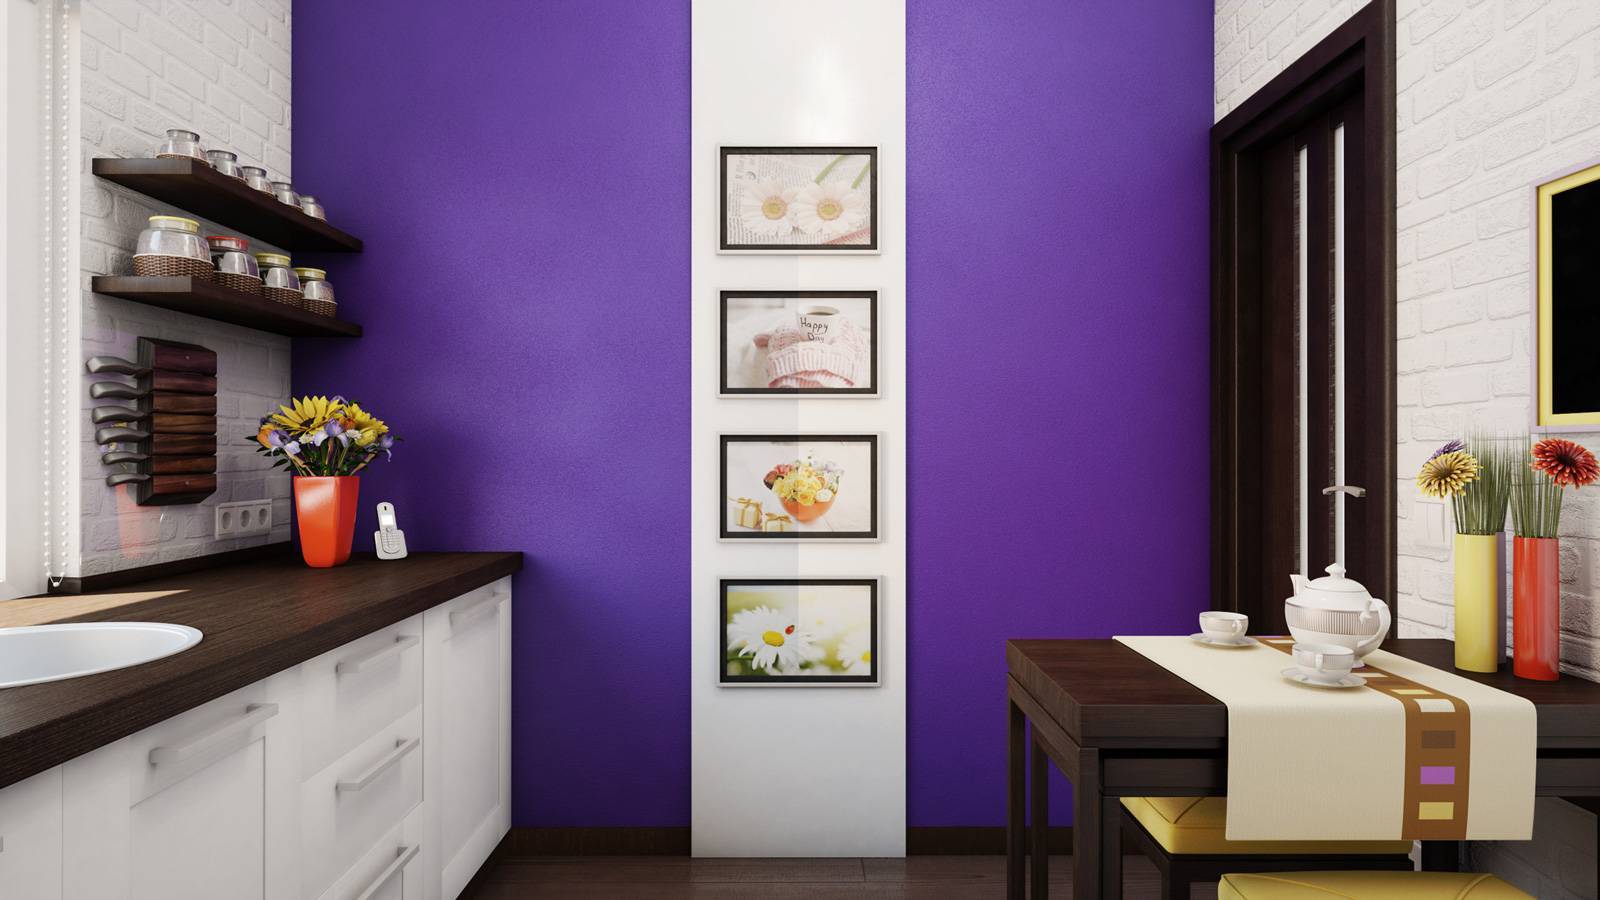 Как покрасить стены на кухне: какой состав лучше выбрать, как можно сделать это красиво и интересно своими руками, а также варианты для маленьких помещений, фото